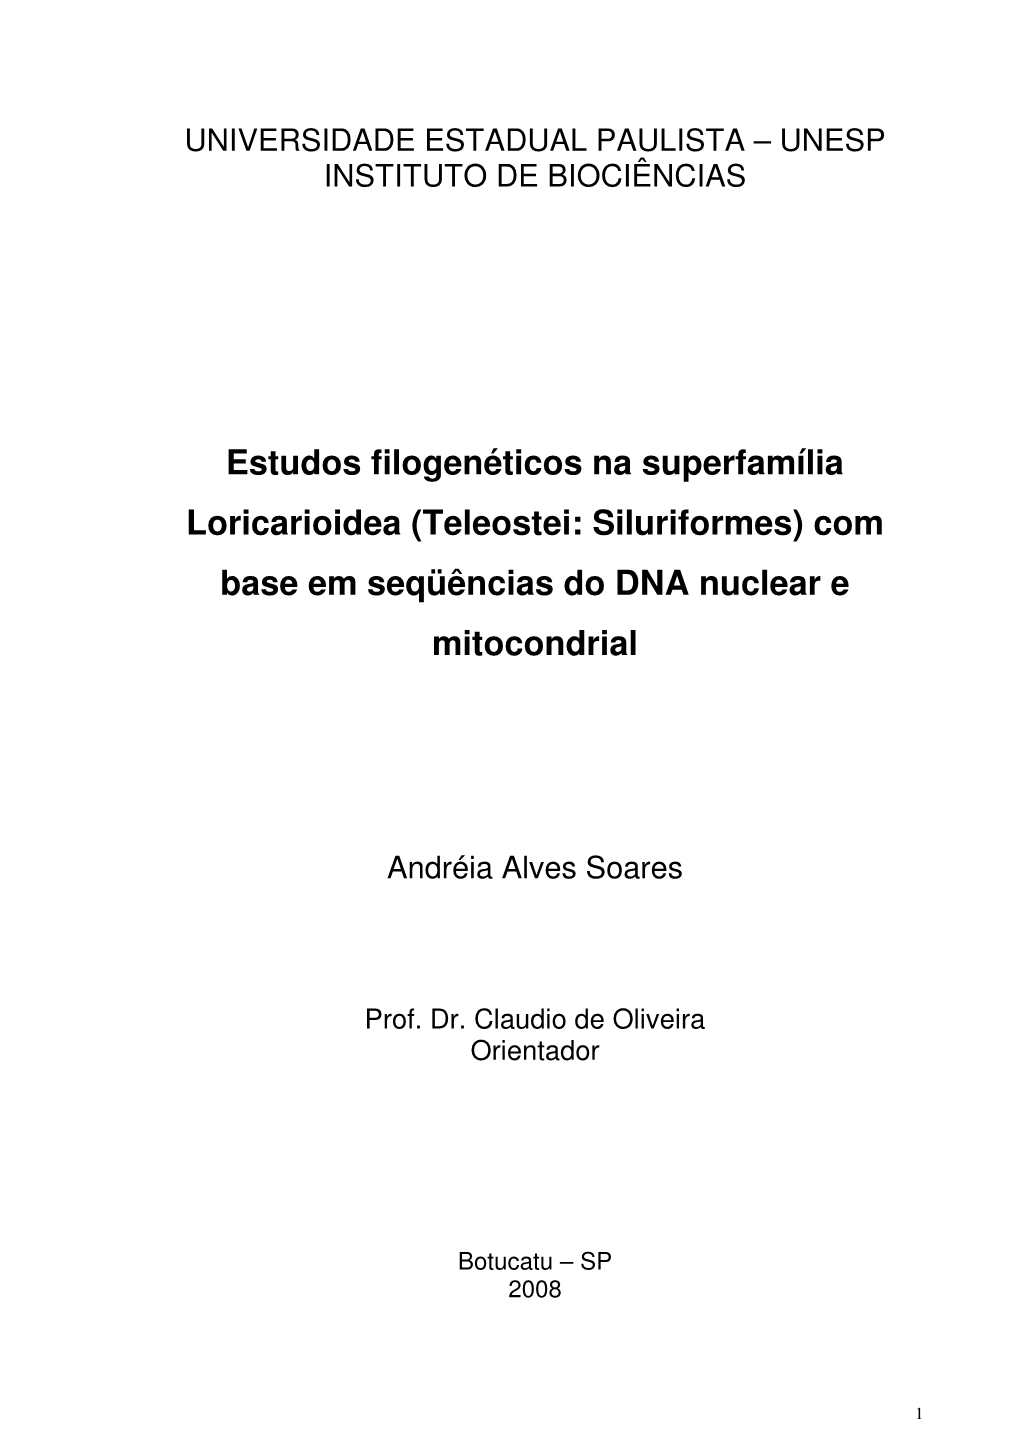 Estudos Filogenéticos Na Superfamília Loricarioidea (Teleostei: Siluriformes) Com Base Em Seqüências Do DNA Nuclear E Mitocondrial